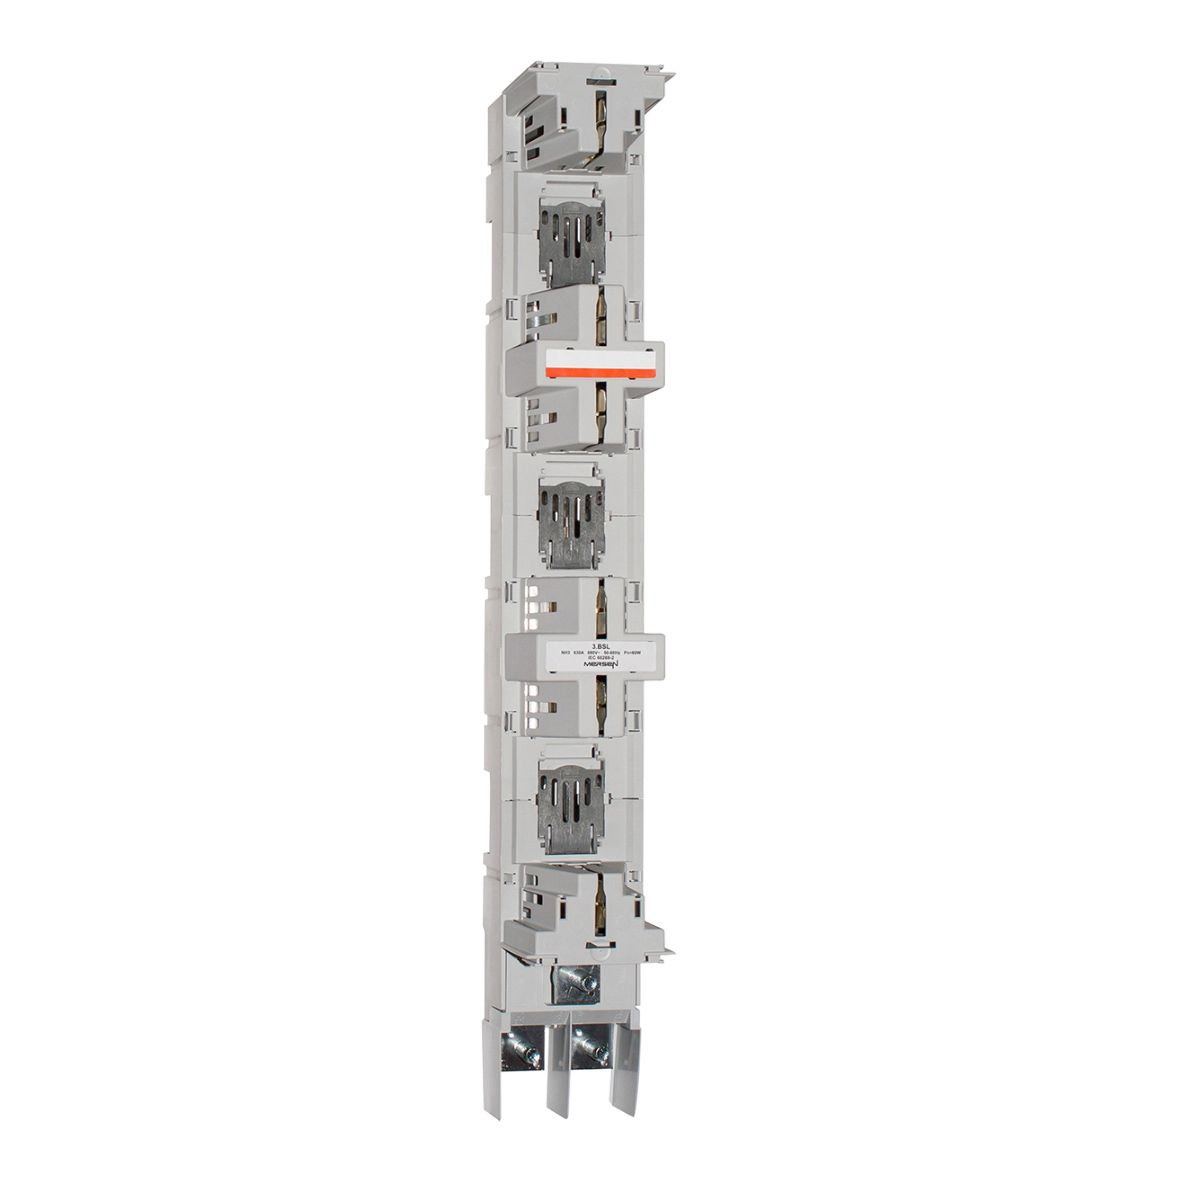 E1002298 - NH-vertical fuse rail BSL 630A M12 bolt